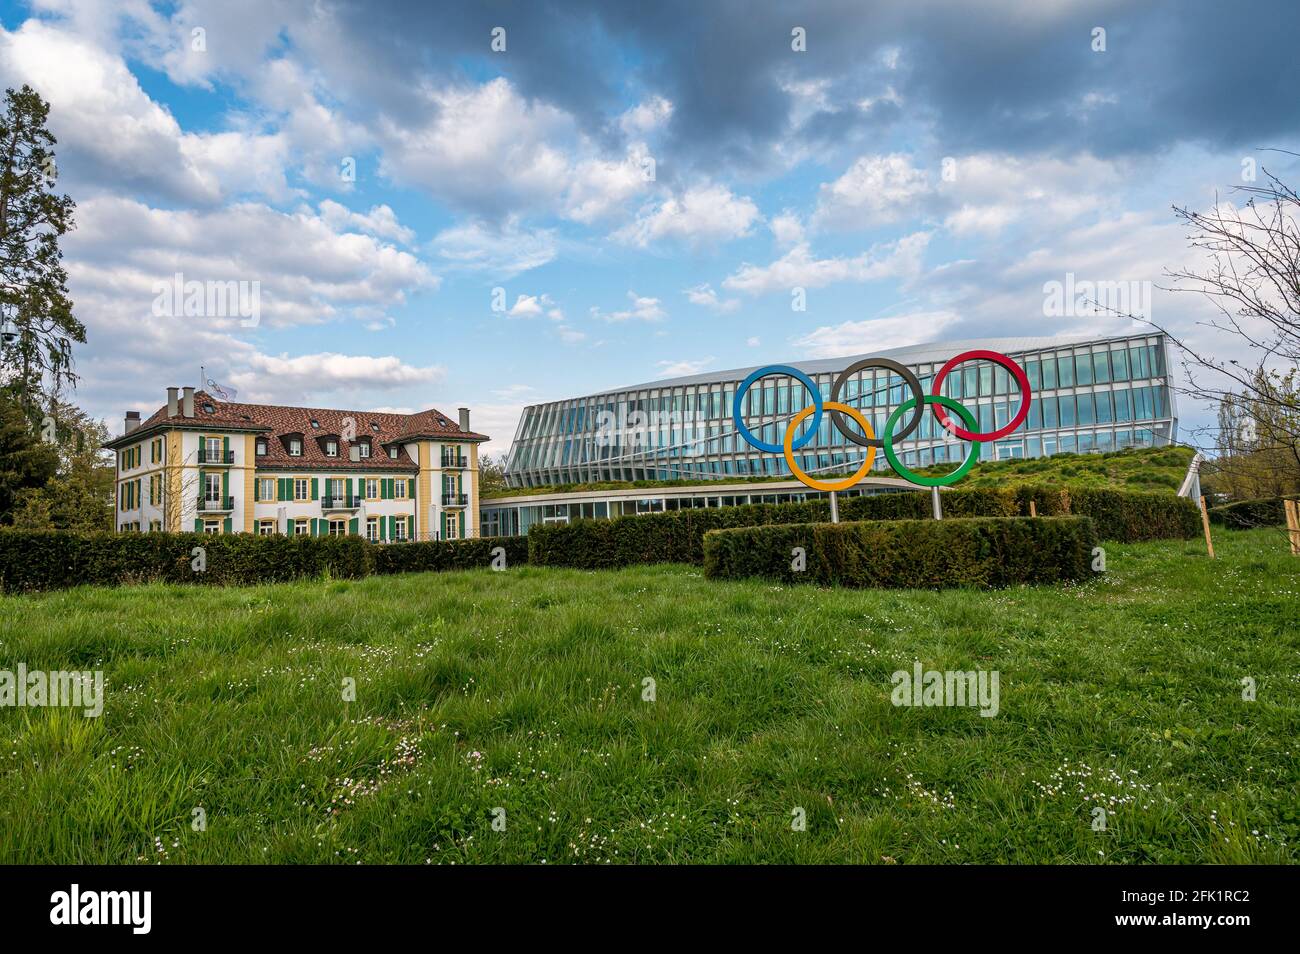 Losanna, Cantone di Vaud, Svizzera - 04.18.2021: Nuova sede del Comitato Olimpico Internazionale. Riferimento anatomico. Foto Stock